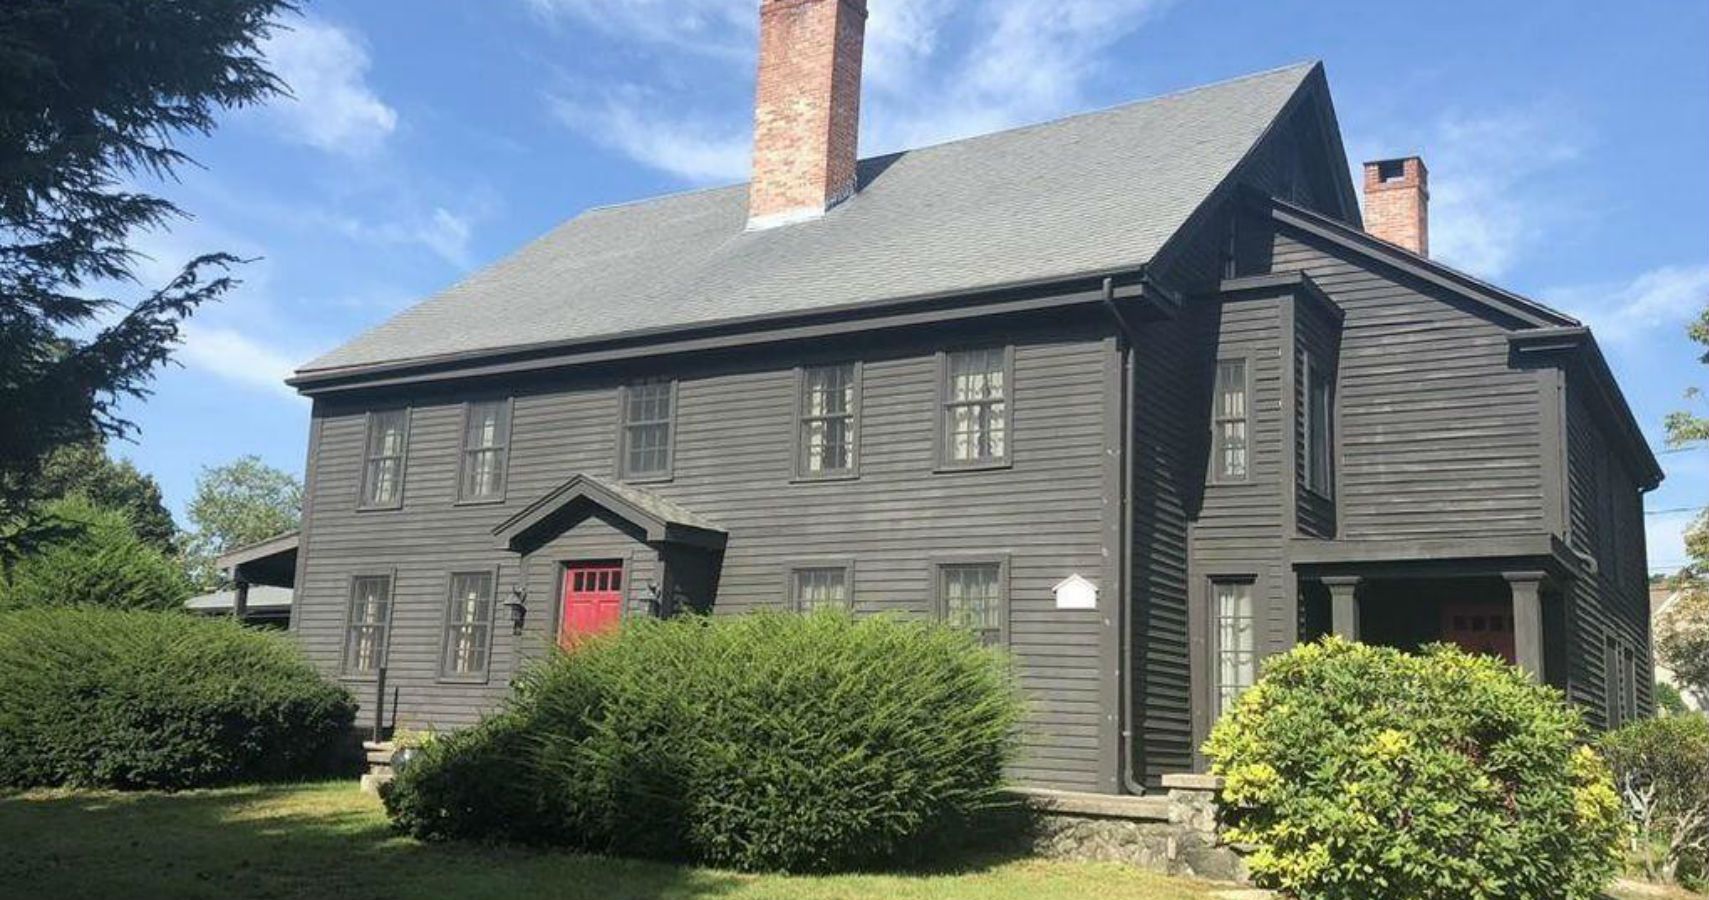 Uma casa envolvida nos julgamentos de Salem esta a venda